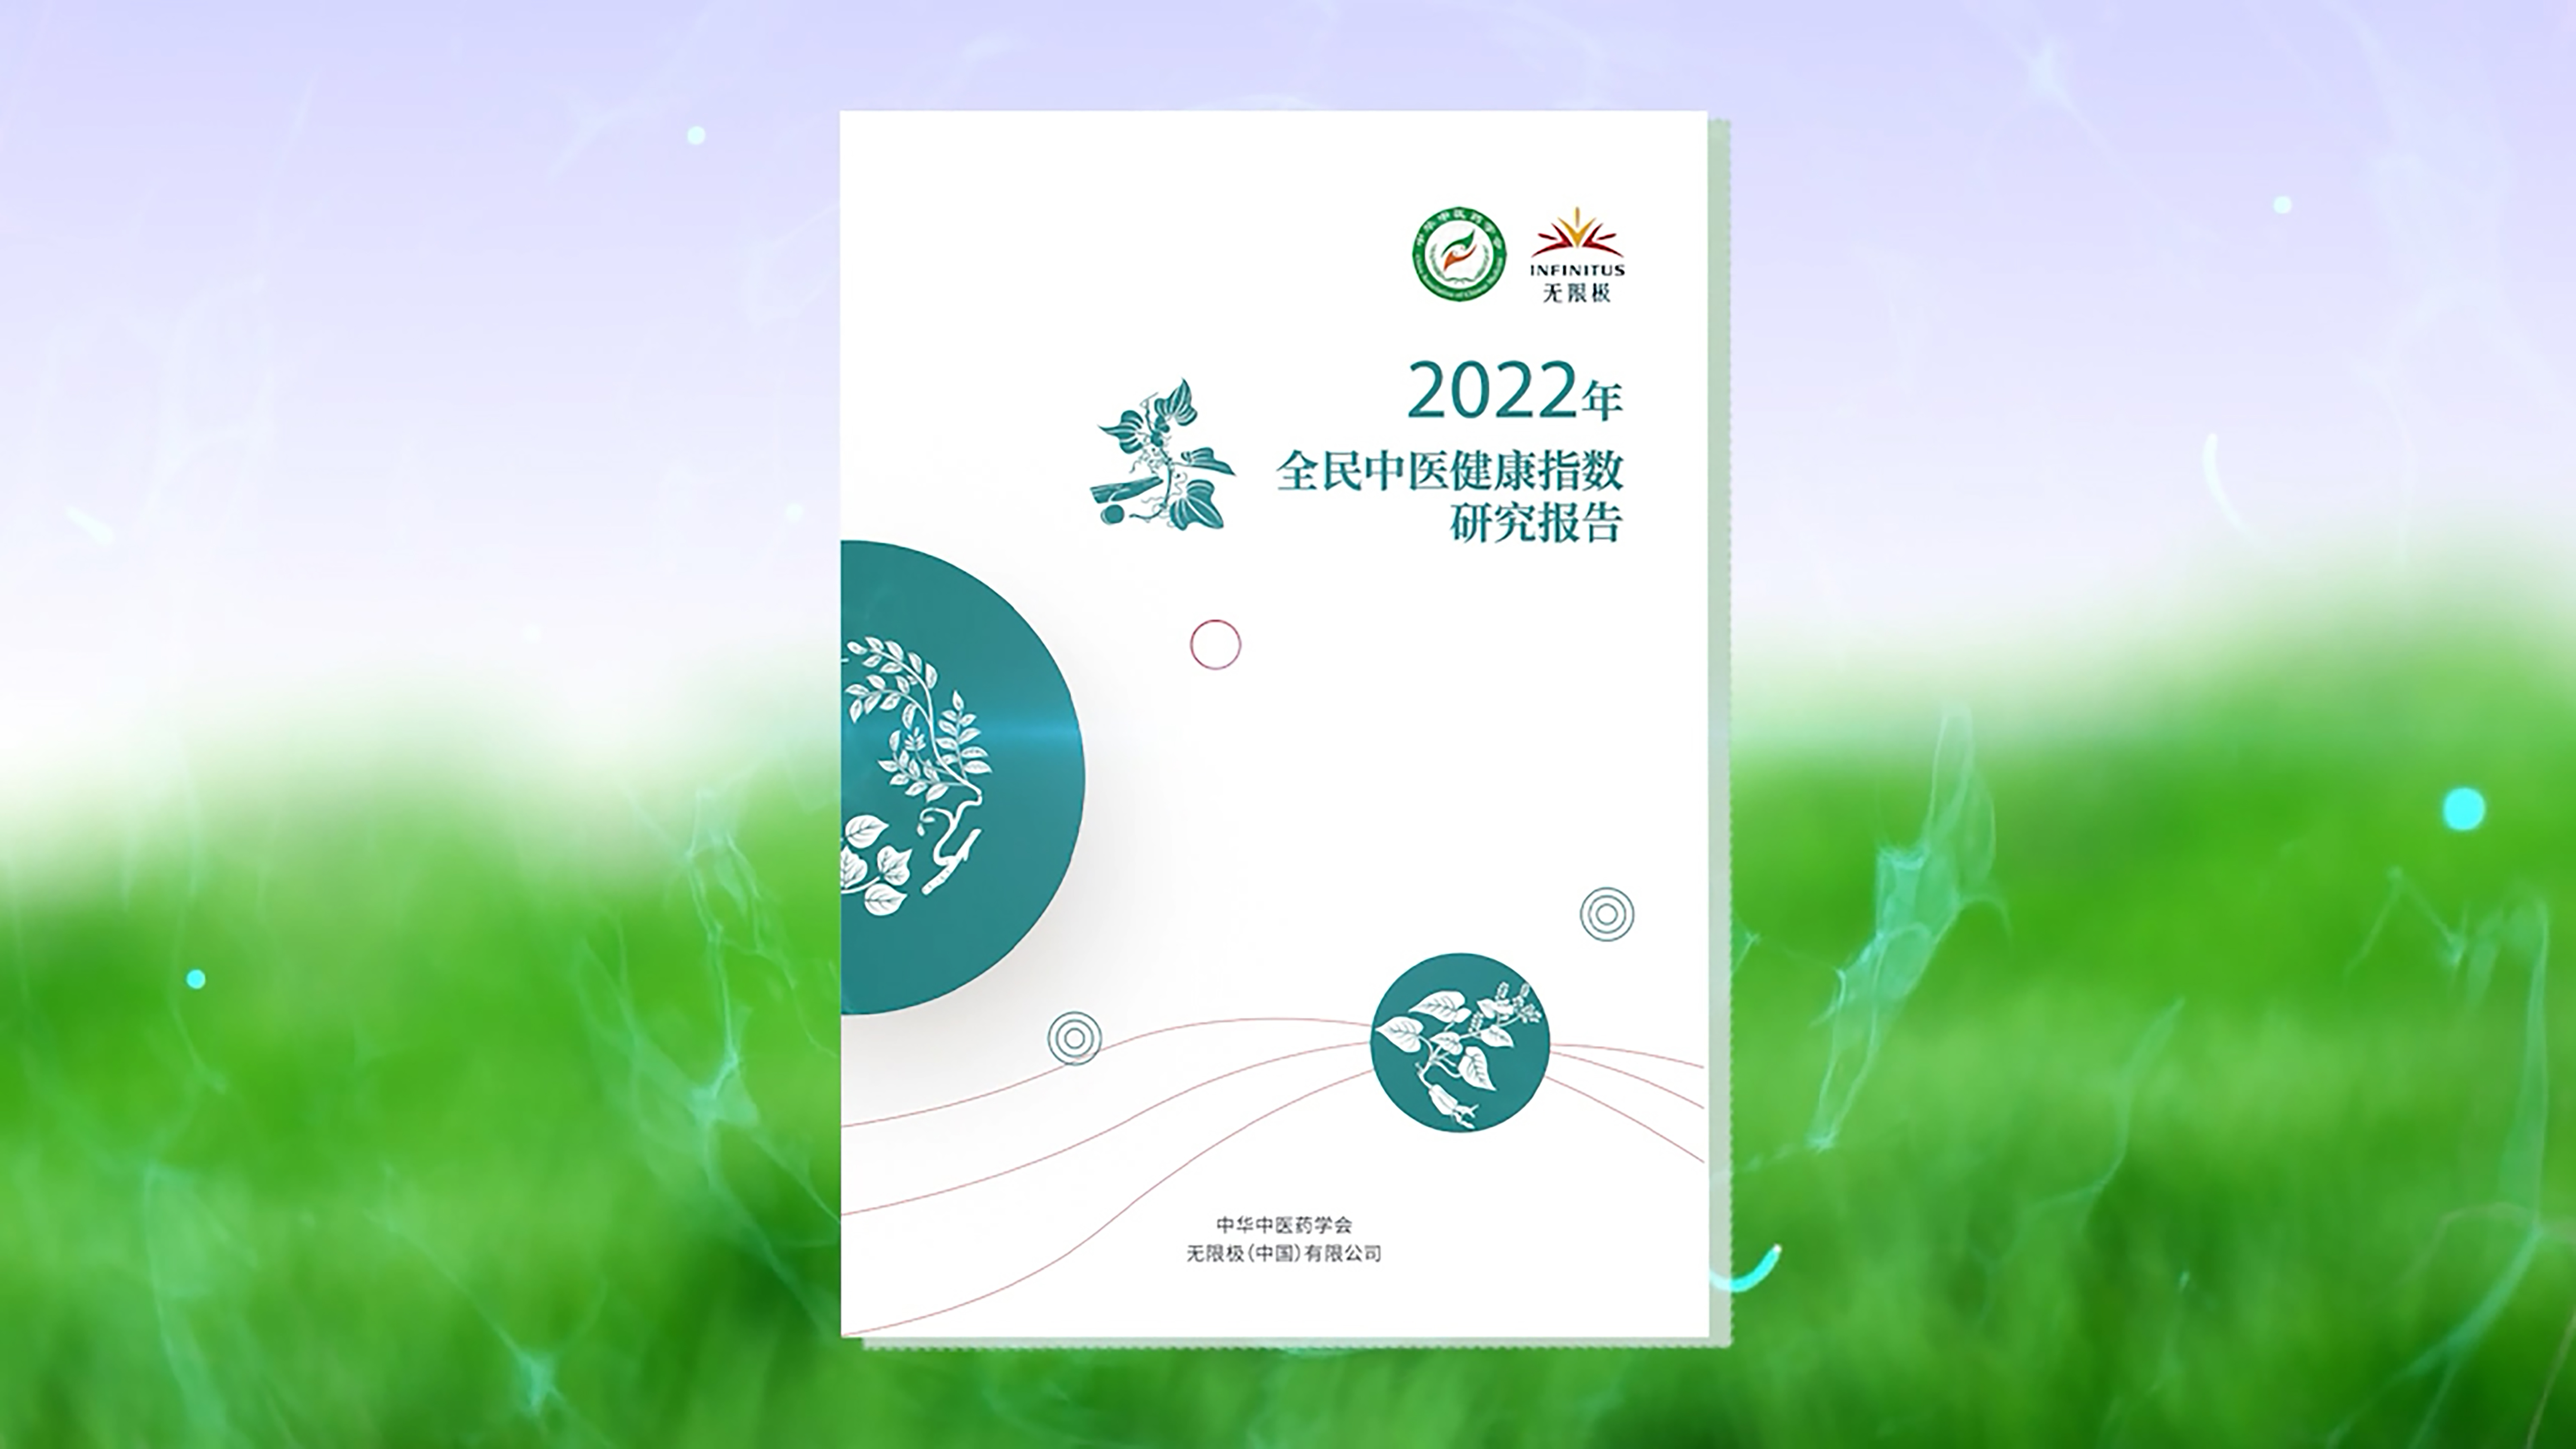 《2022年全民中医健康指数研究报告》正式发布